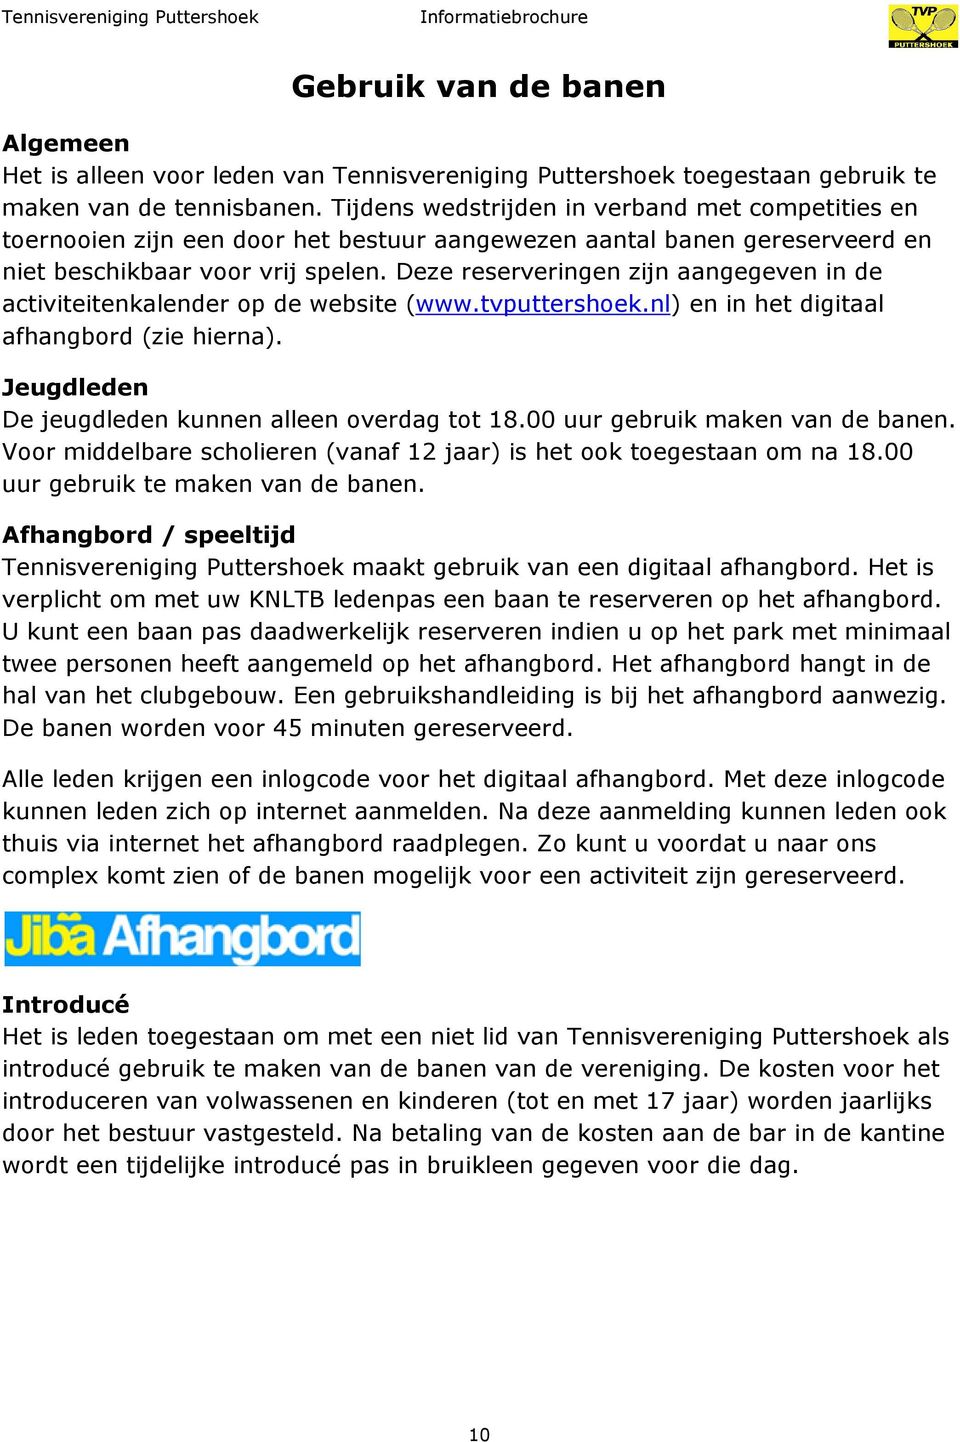 Deze reserveringen zijn aangegeven in de activiteitenkalender op de website (www.tvputtershoek.nl) en in het digitaal afhangbord (zie hierna). Jeugdleden De jeugdleden kunnen alleen overdag tot 18.